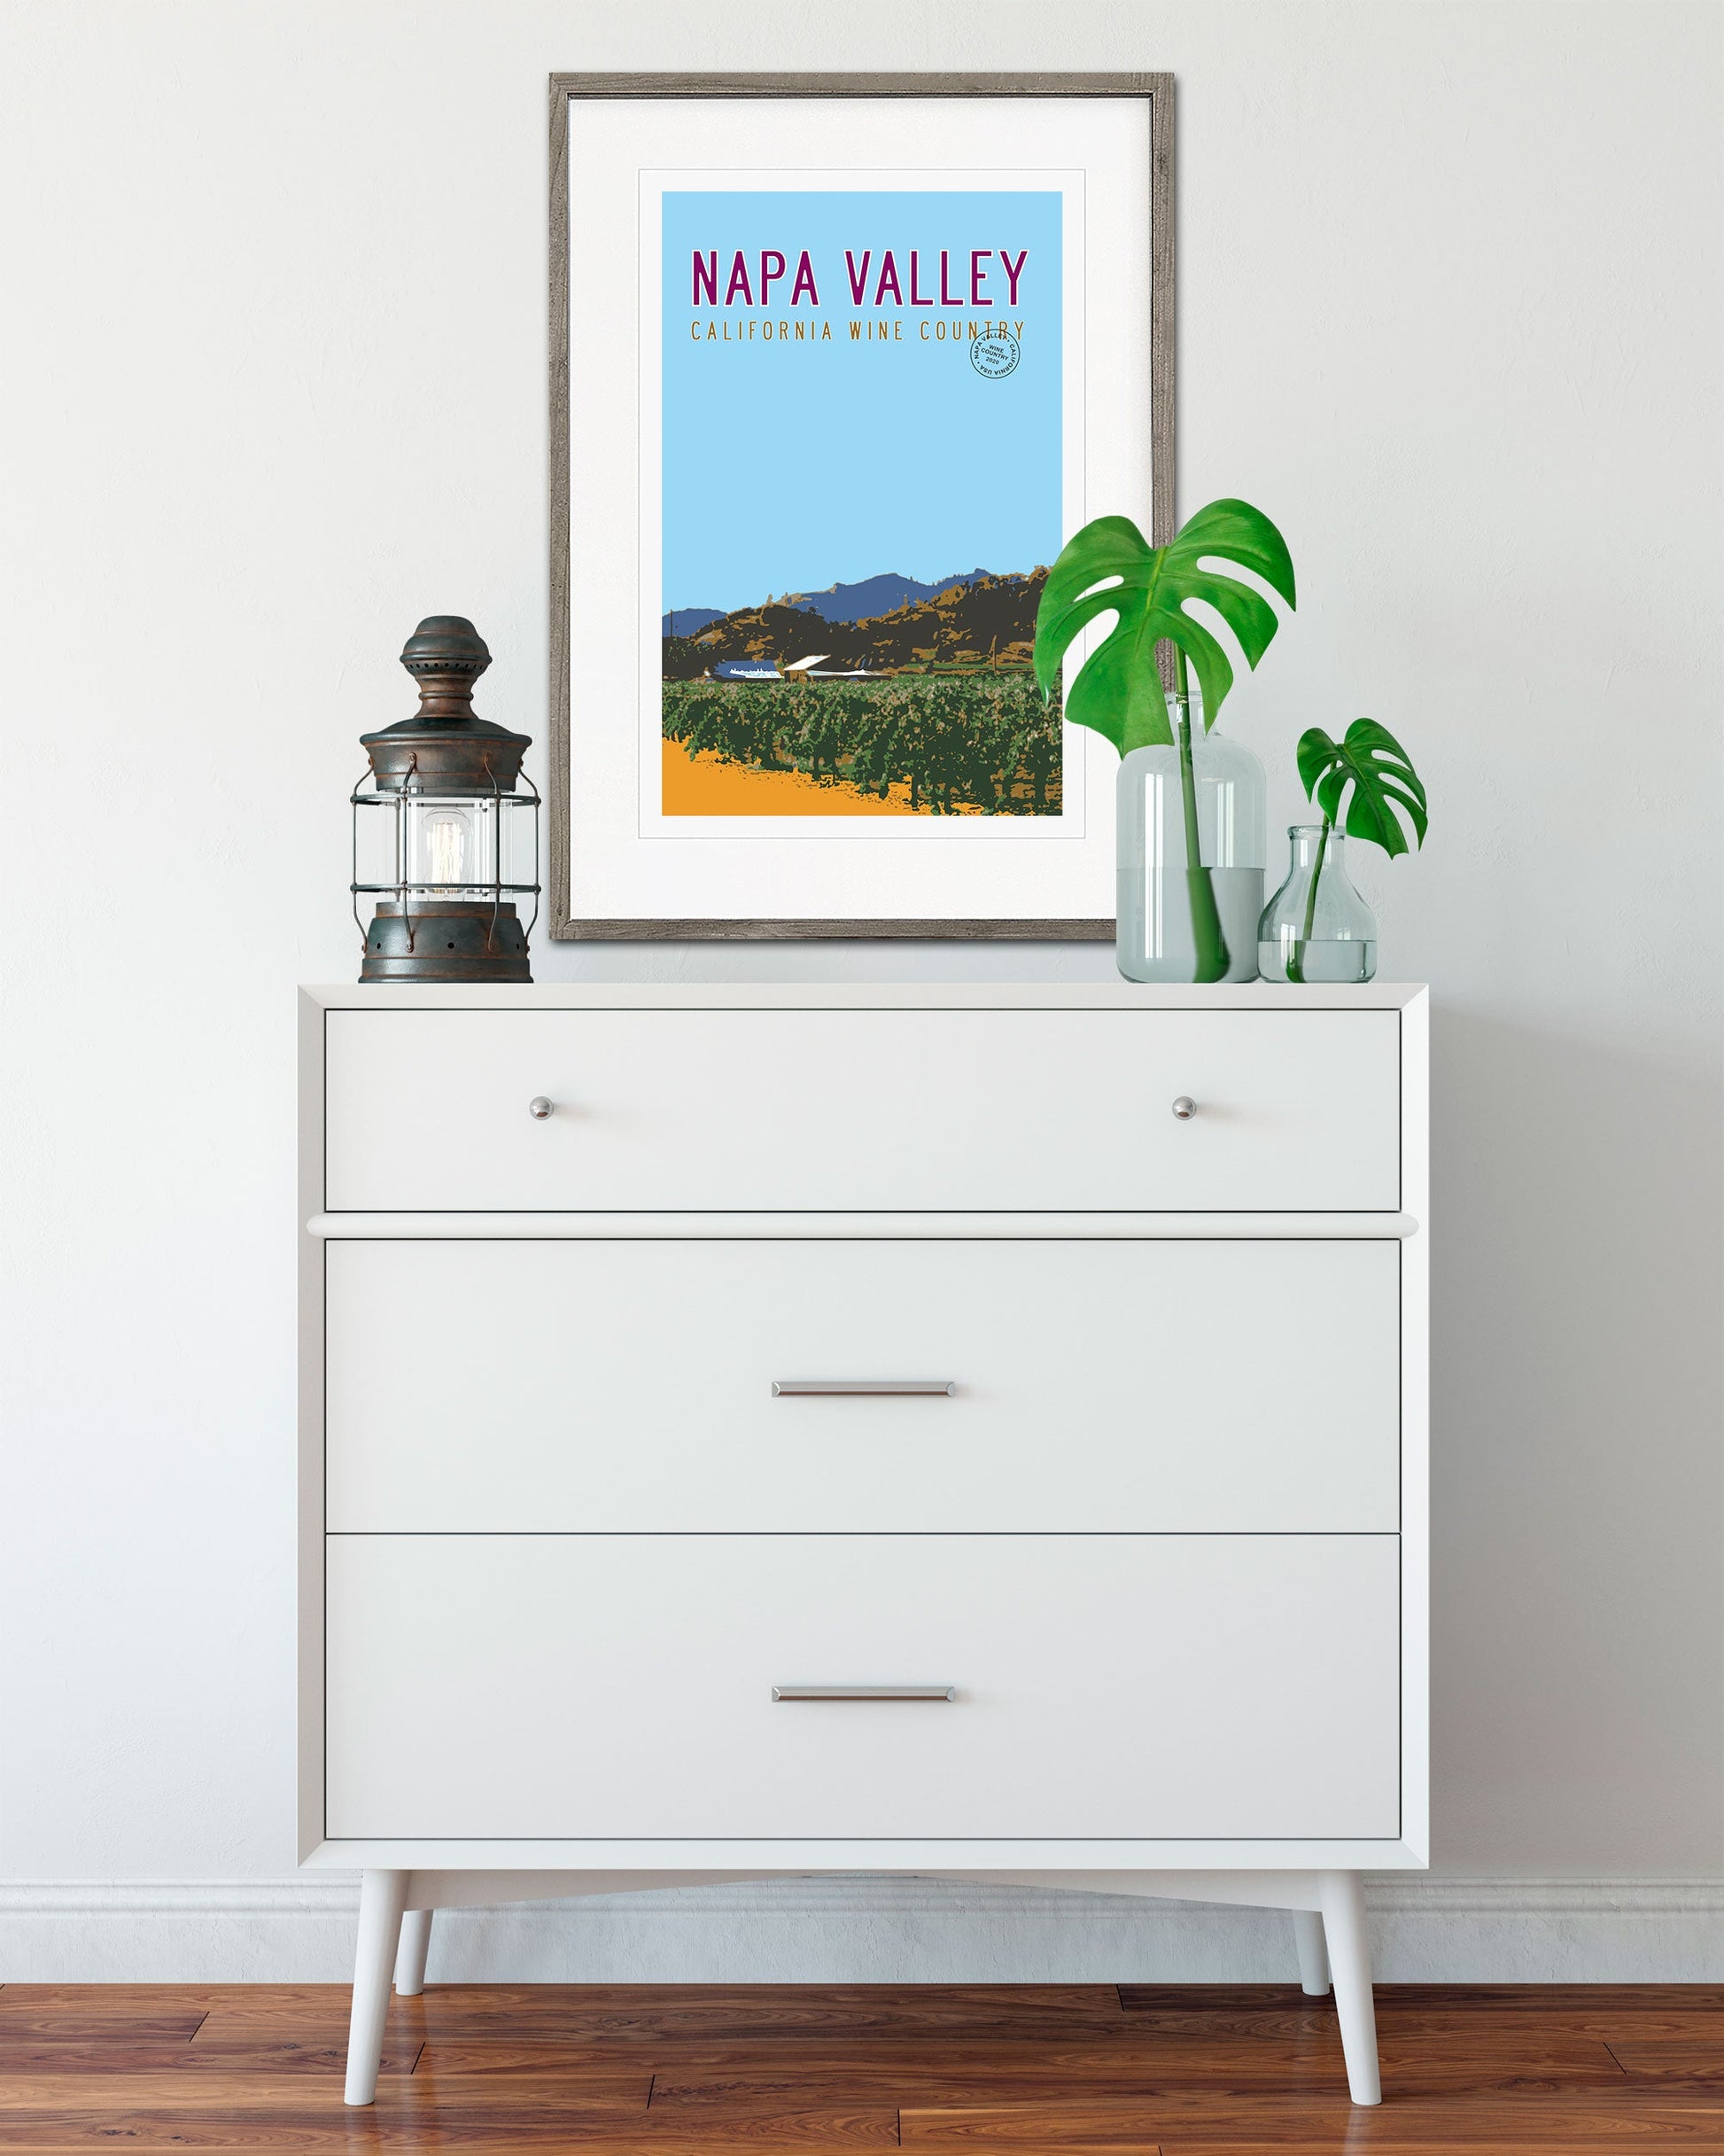 Vintage Napa Valley Travel Poster with vineyard hanging over dresser - Transit Design